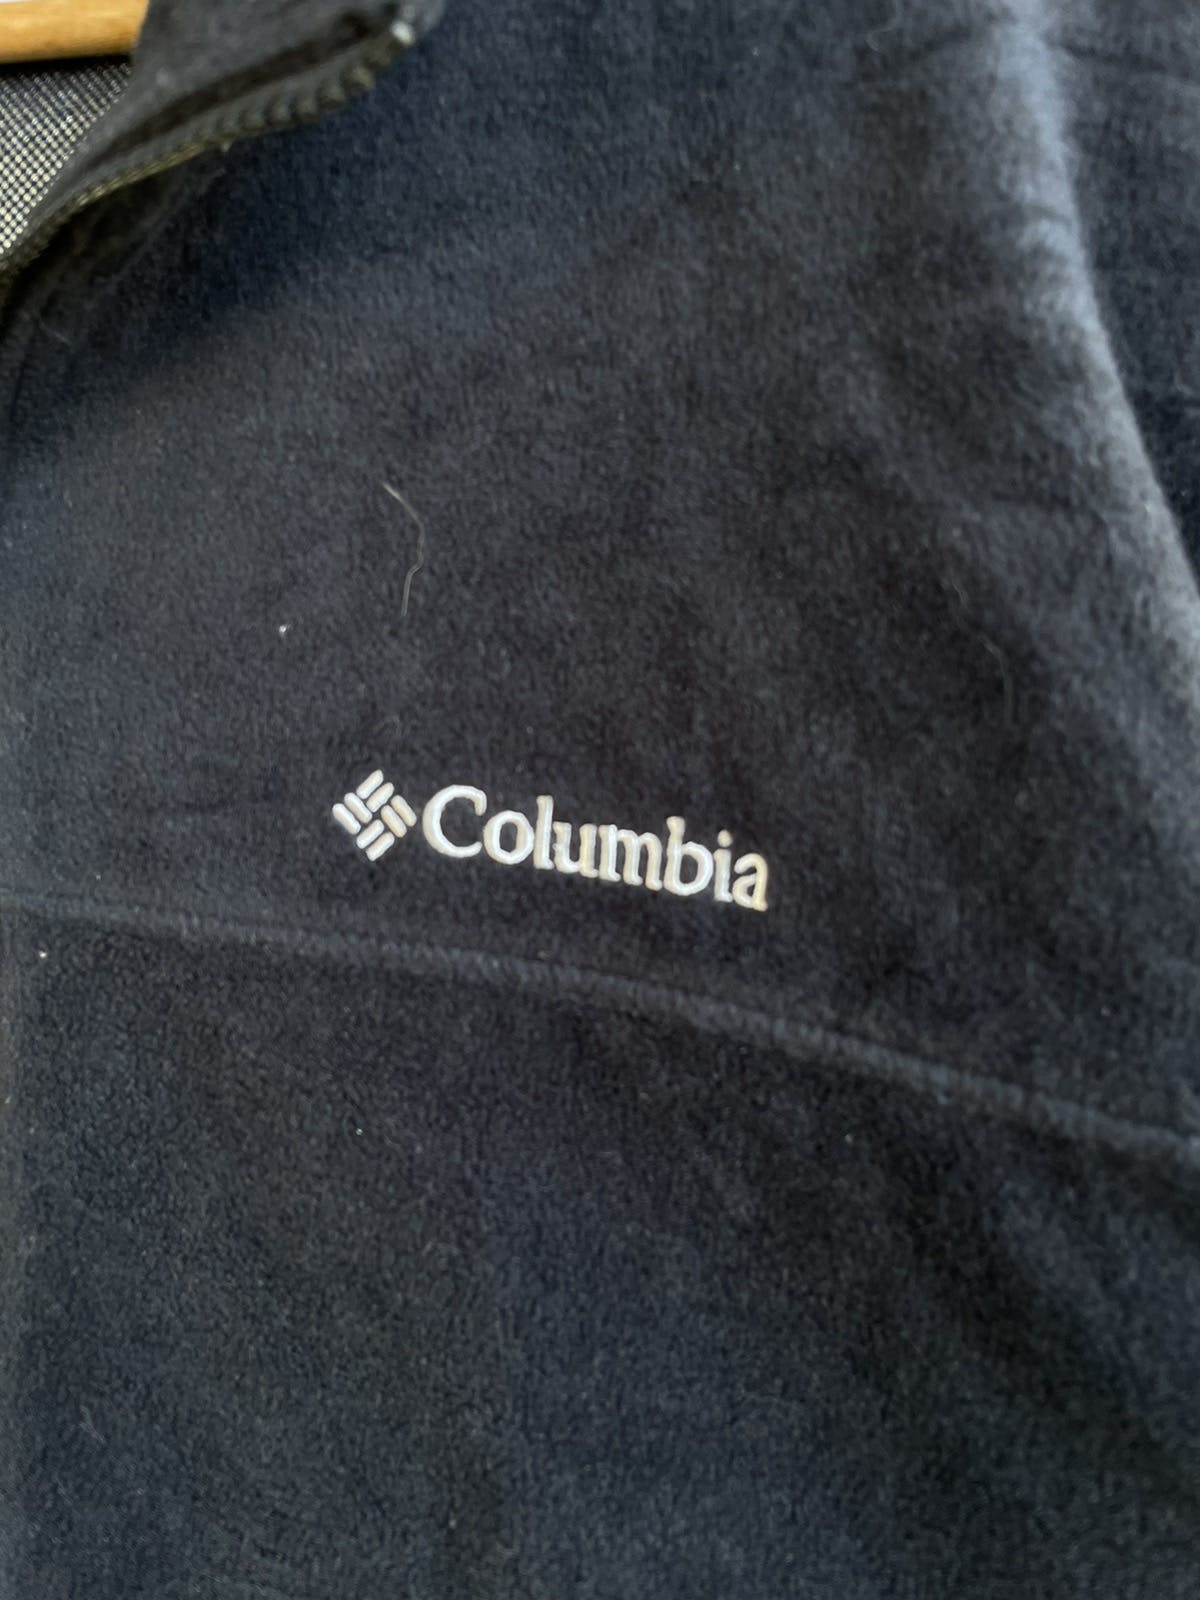 💥Vintage Columbia Omni Heat Fleece Zipper Sweater - 3